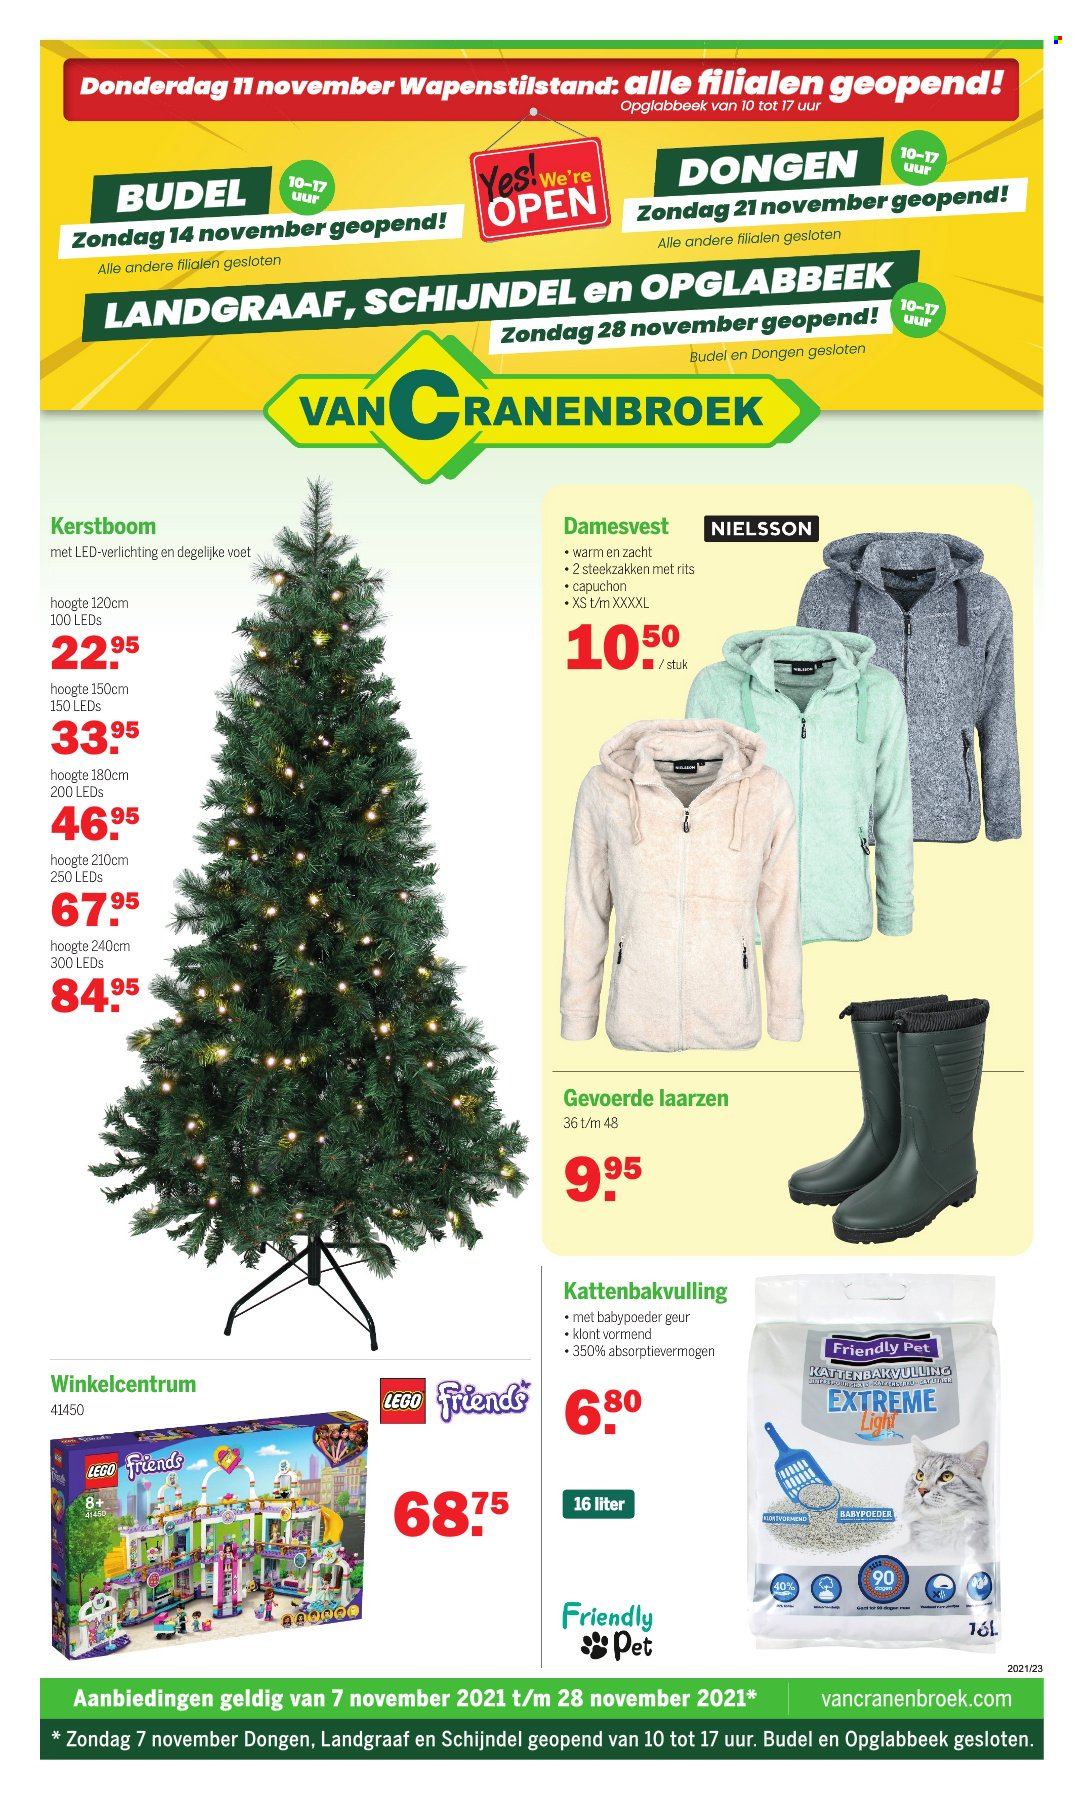 thumbnail - Van Cranenbroek-aanbieding - 07/11/2021 - 28/11/2021 -  producten in de aanbieding - laarzen, kerstboom, LEGO, LEGO Friends, verlichting. Pagina 1.